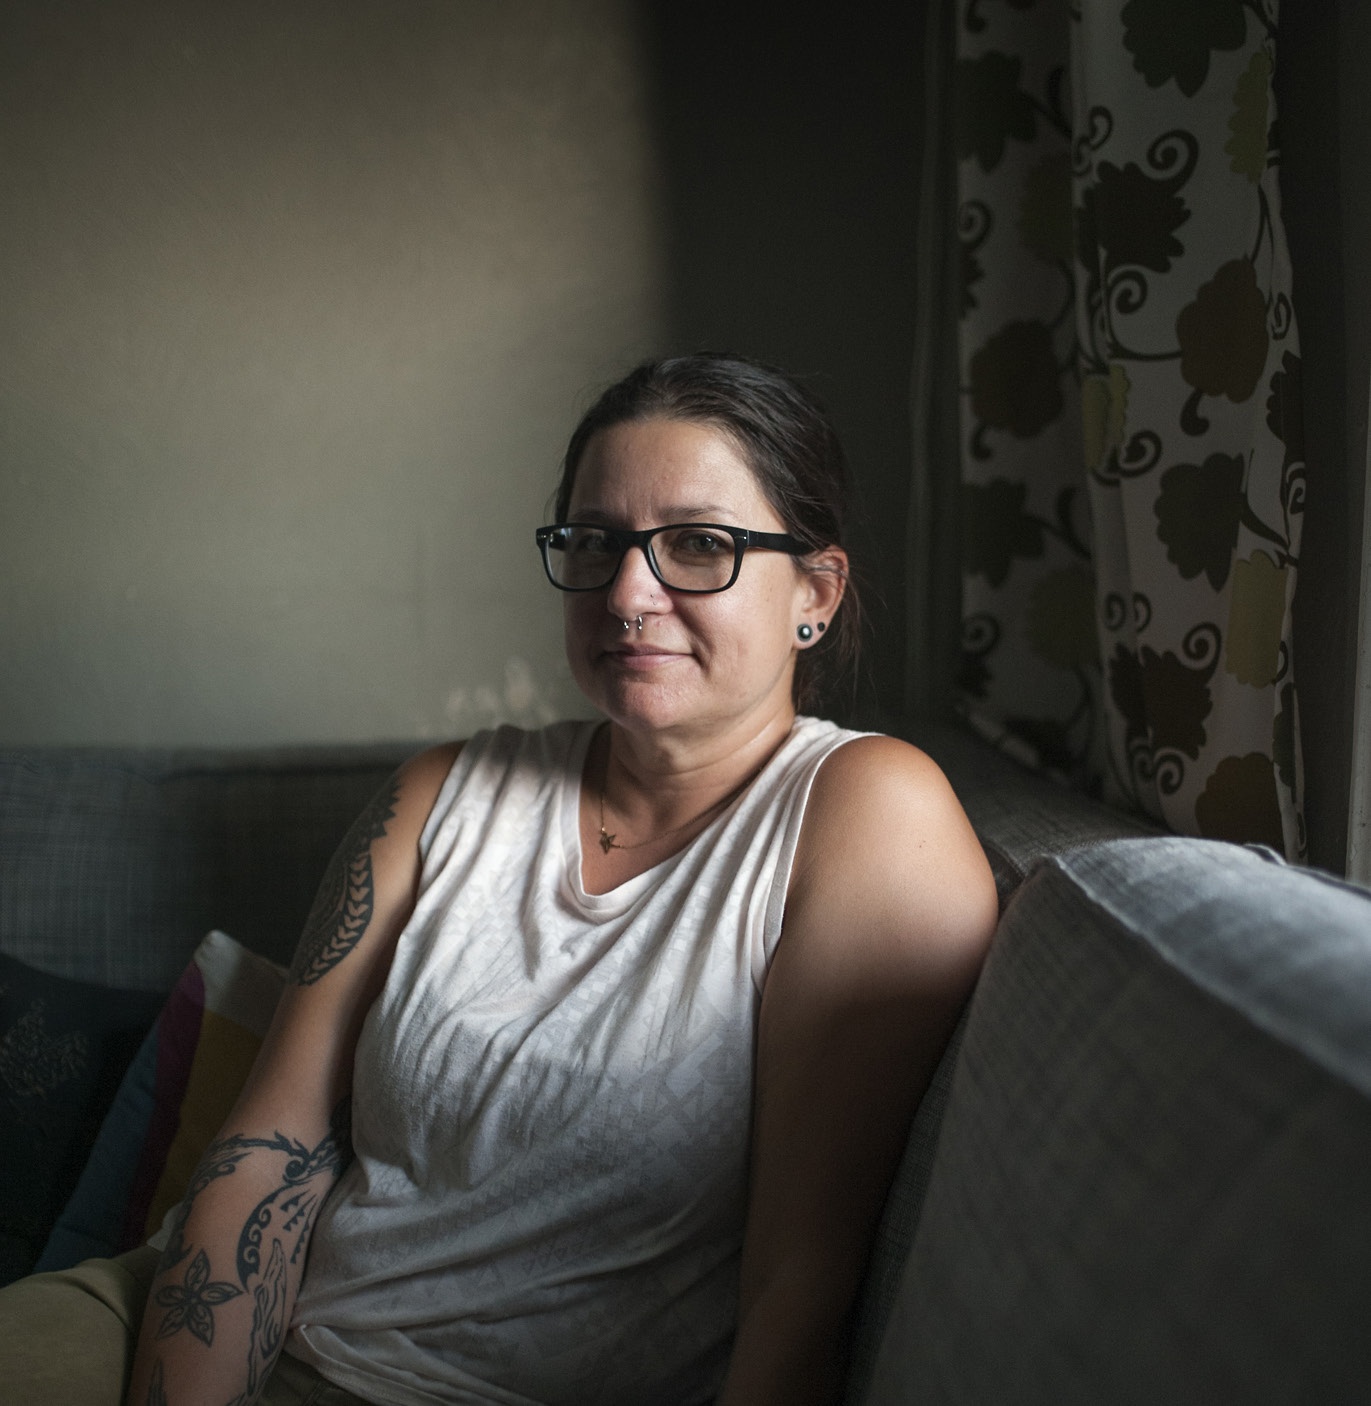 Heidi Veltheim är socialarbetare med sydöstra
Connecticut som arbetsfält. Hon möter många
med psykiska hälsoproblem som suttit i fängelse.